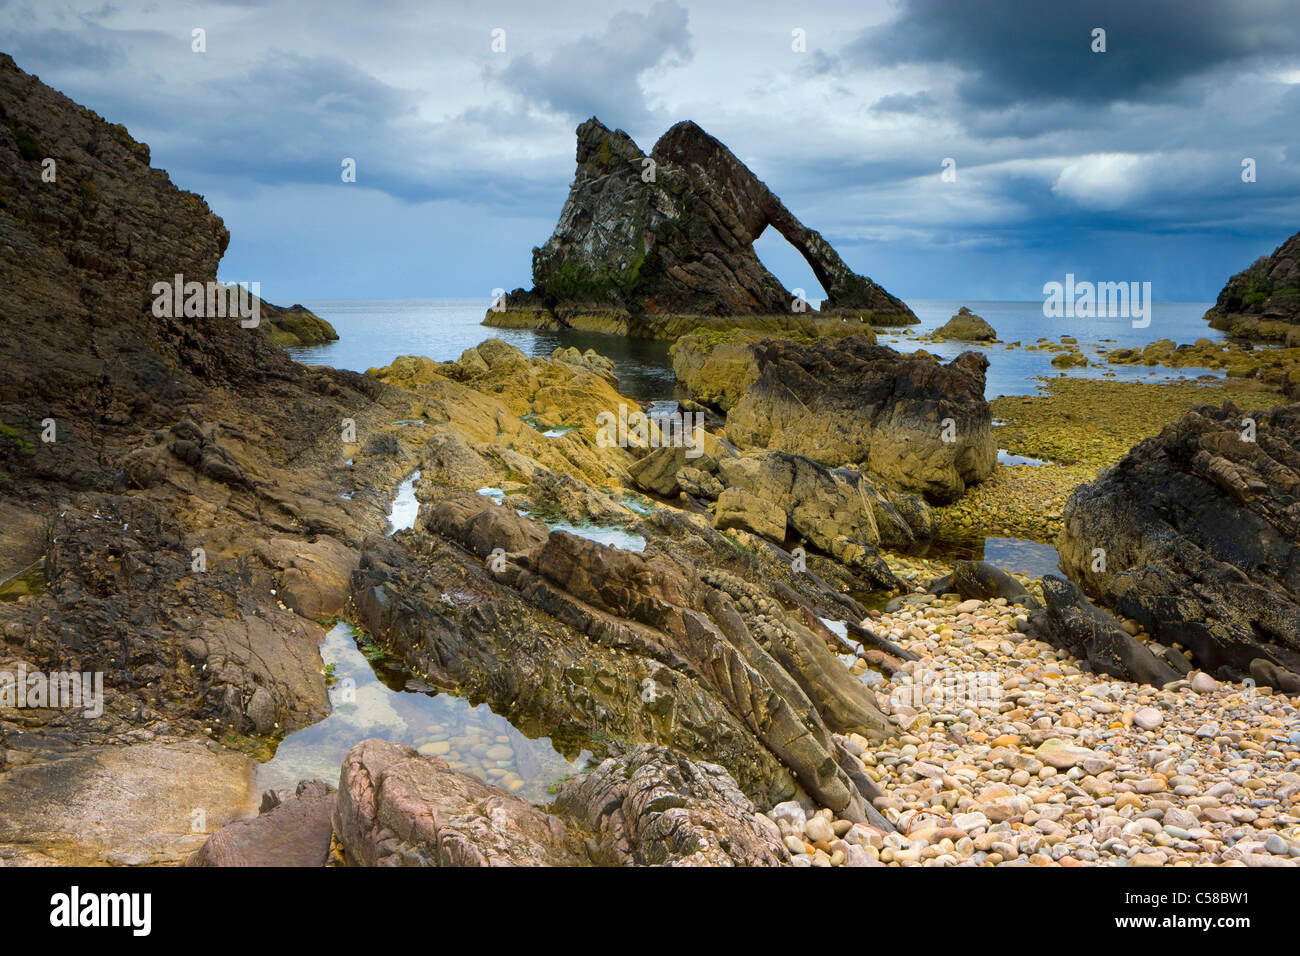 Bow Fiddle rock, gonna, Gran Bretagna, Scozia, Europa costa, cliff costa, cliff forme curve di scogliera, pietre, erosione, ti Foto Stock